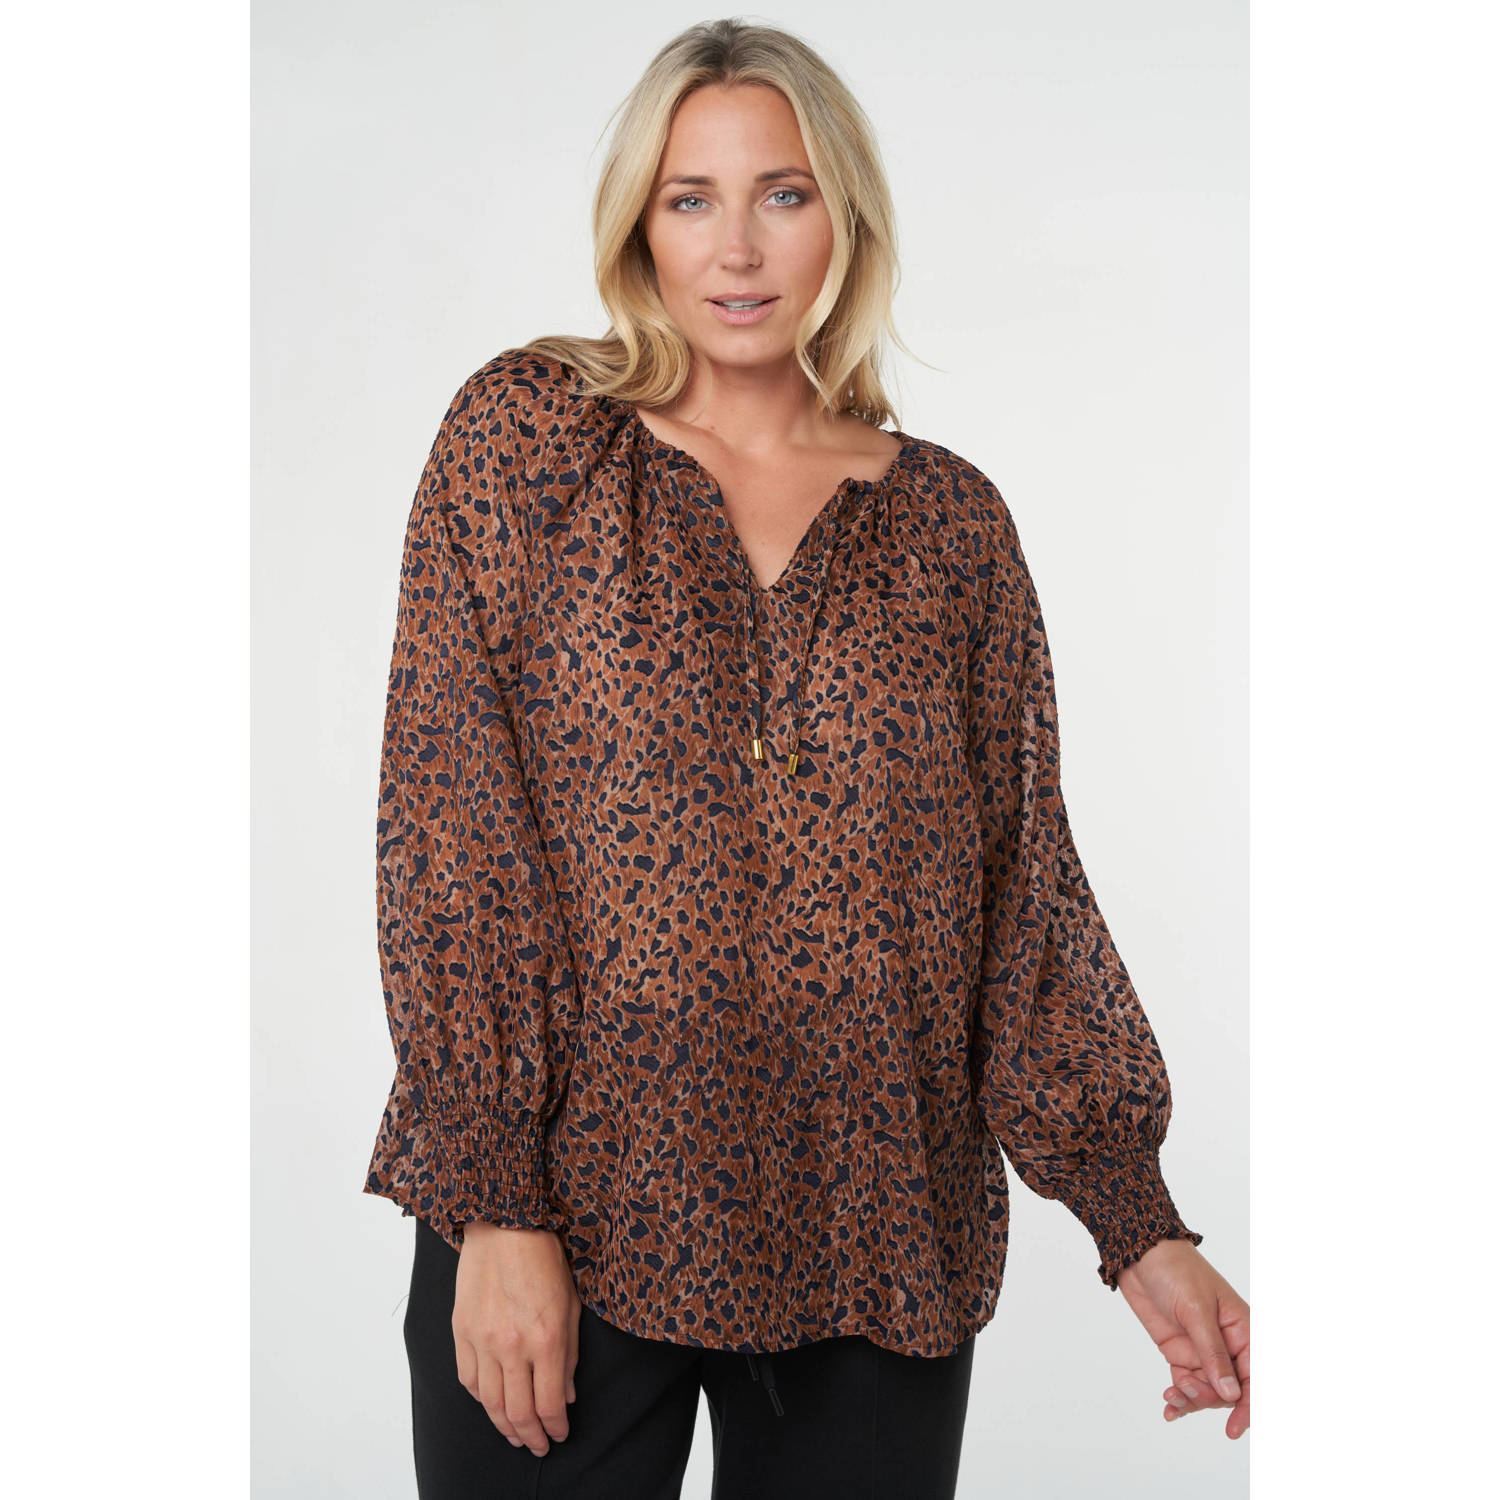 MS Mode blousetop met dierenprint bruin zwart